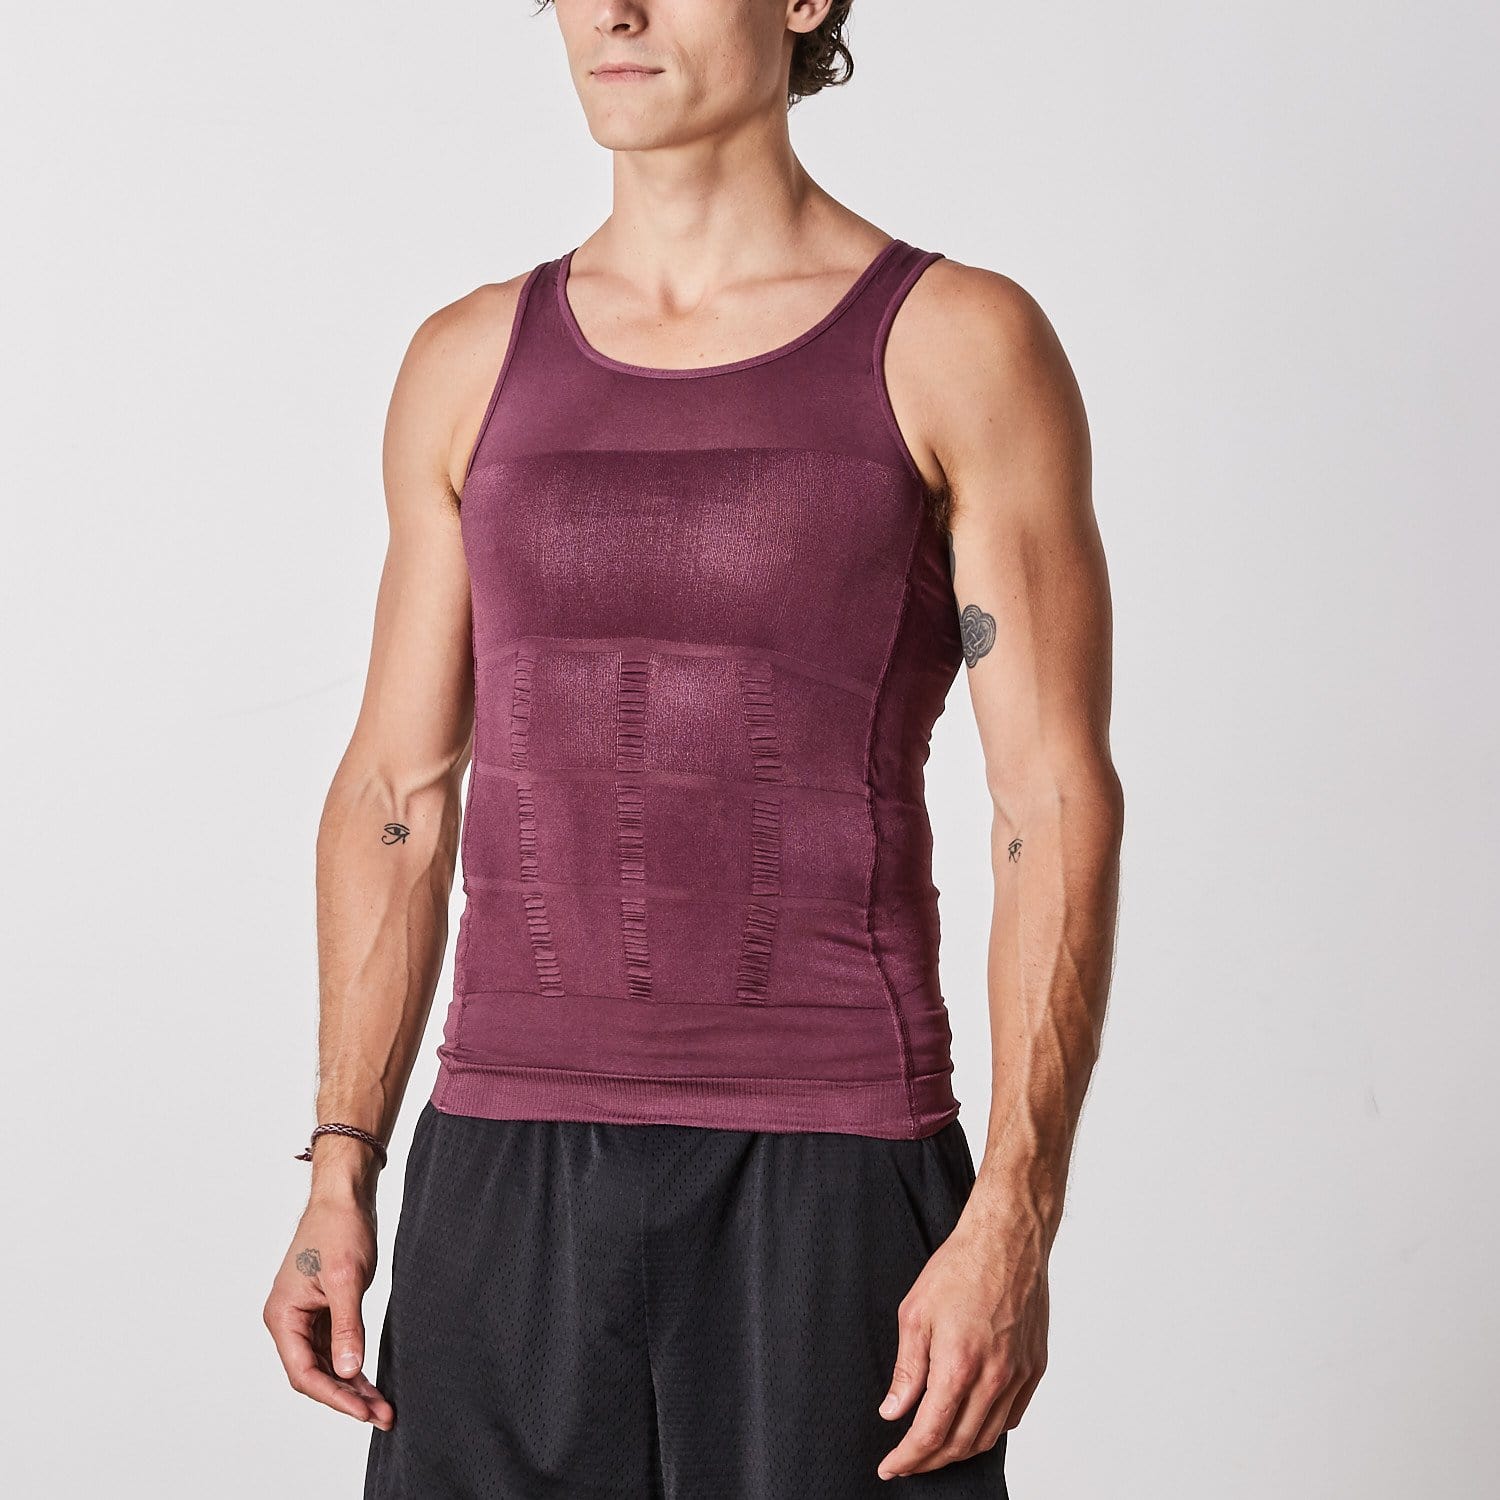 SecondSkin Men's Shaper Cooling T-Shirt Compression Vest Slimming